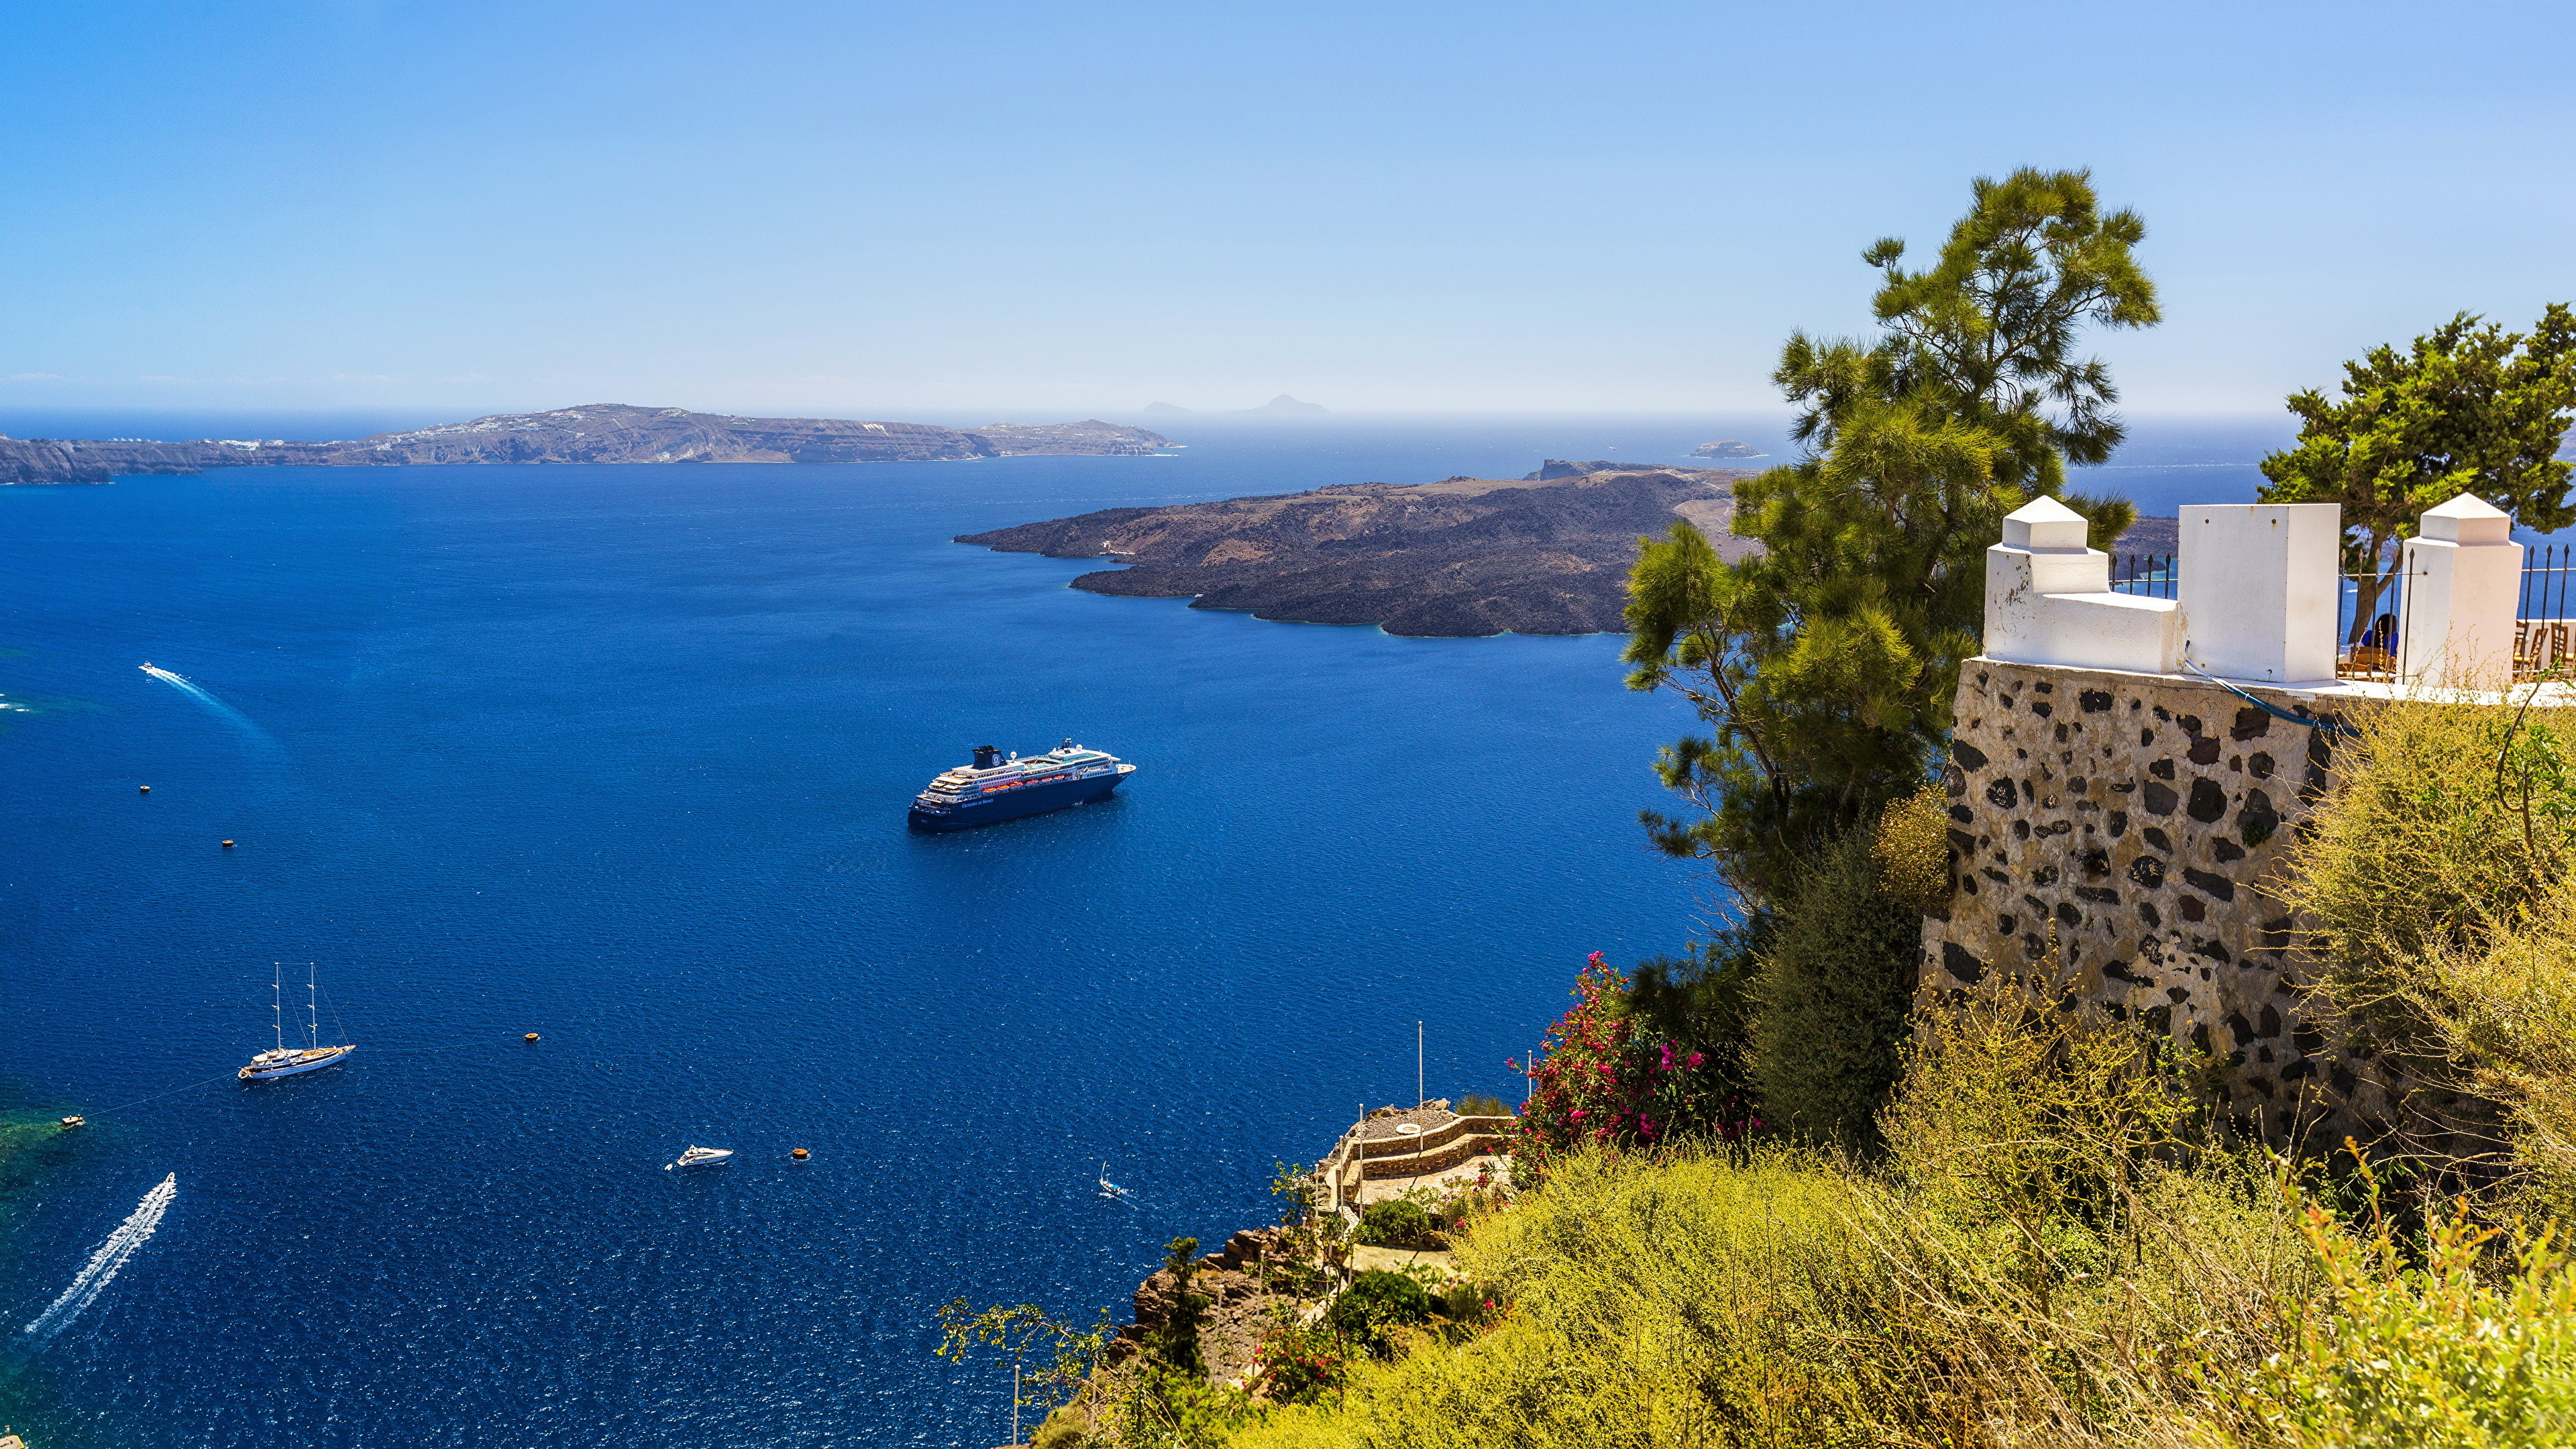 Santorini wallpapers, Greek island bliss, Aegean Sea paradise, Caldera views, 3840x2160 4K Desktop